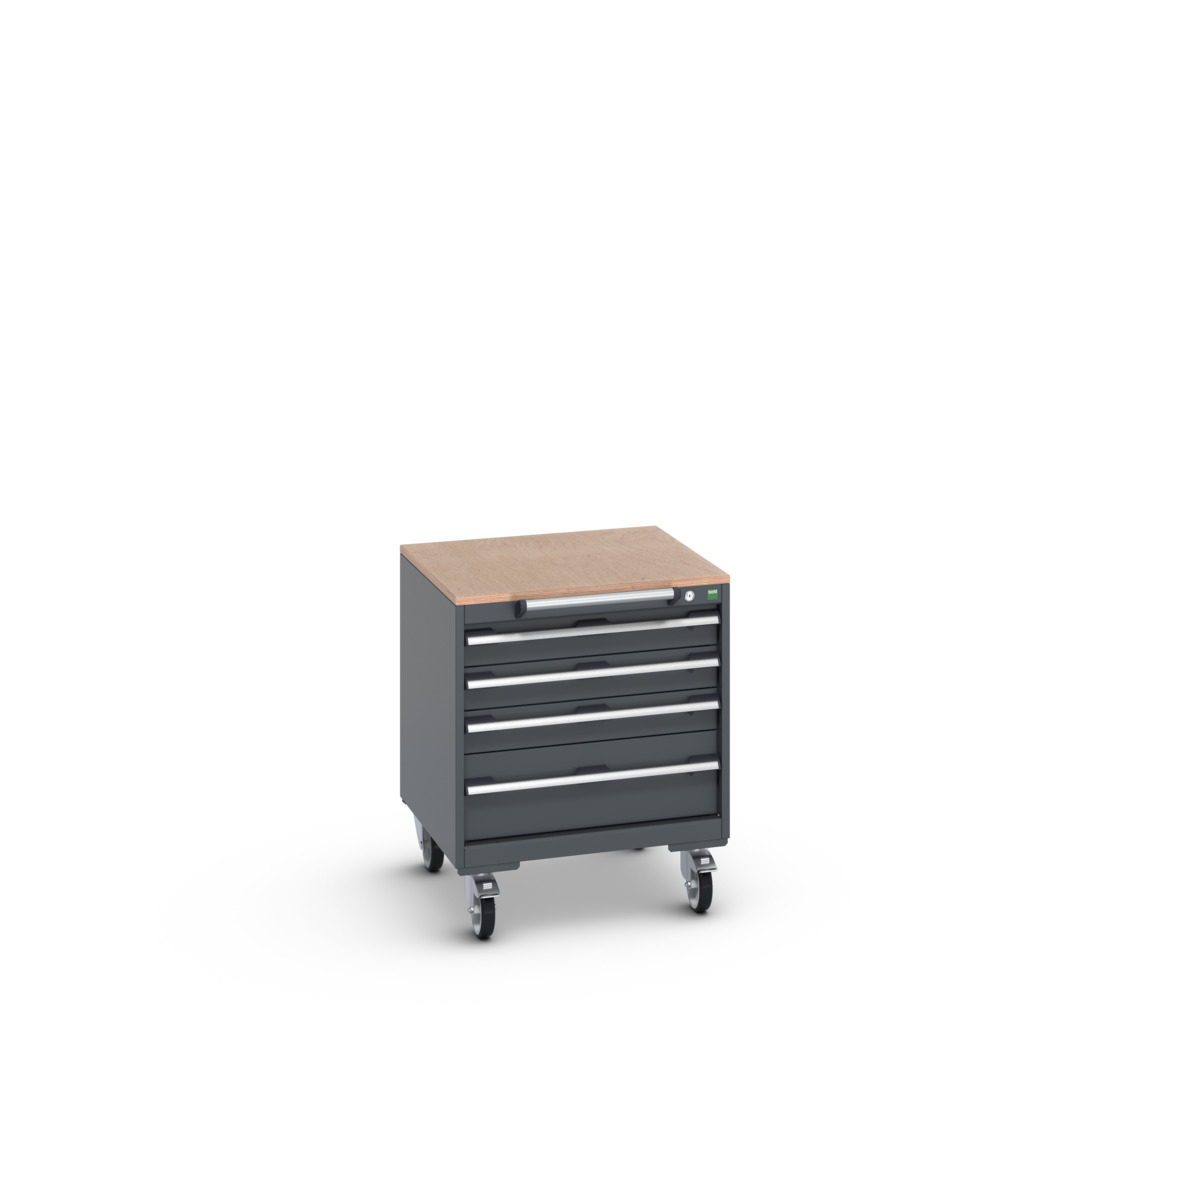 40402143.77V - cubio mobile cabinet